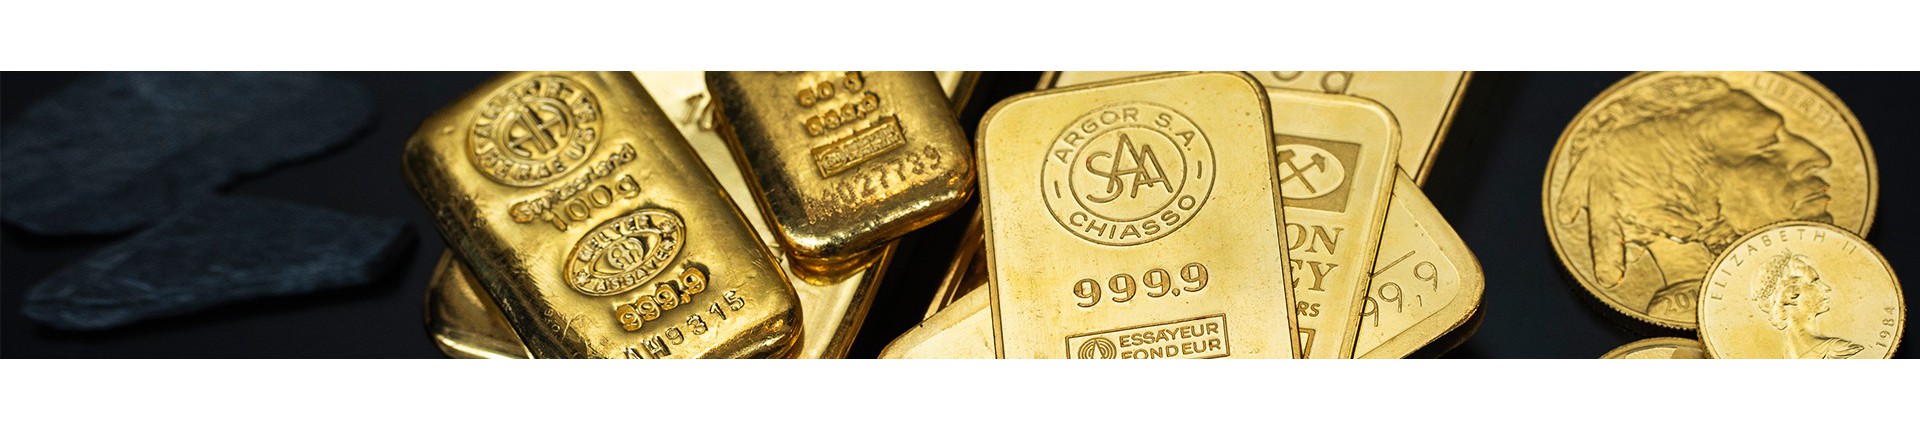 Goud kopen? | Veilig & betrouwbaar | Goudwisselkantoor